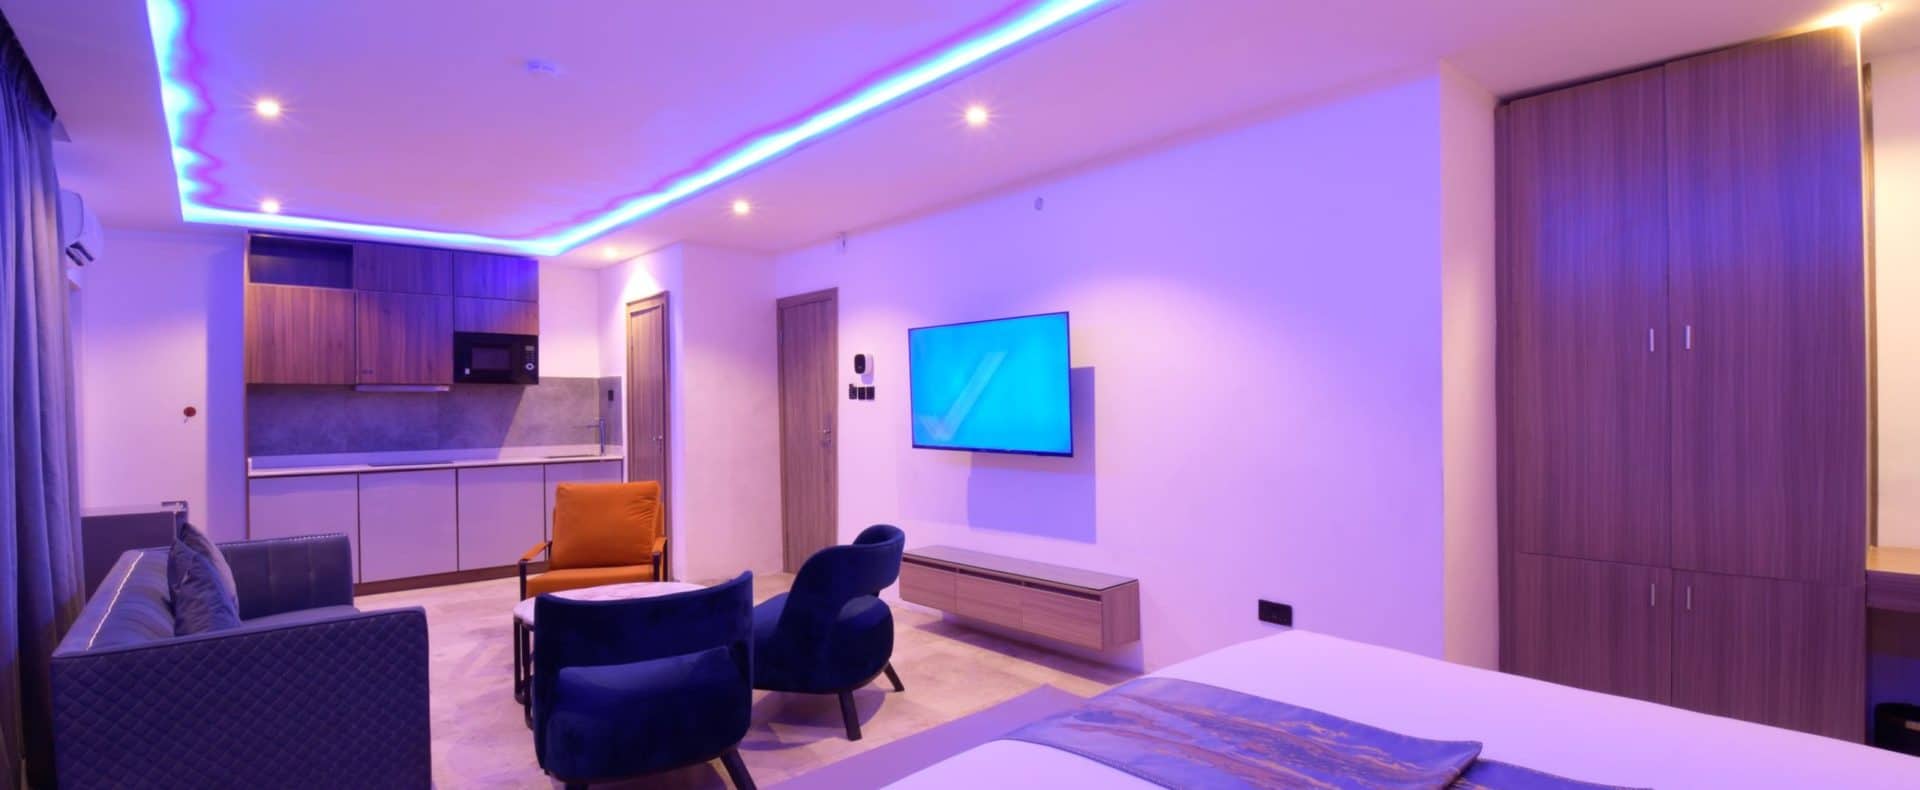 Hotel Studio Apartment For Shortlet In Lekki Lagos Nigeria